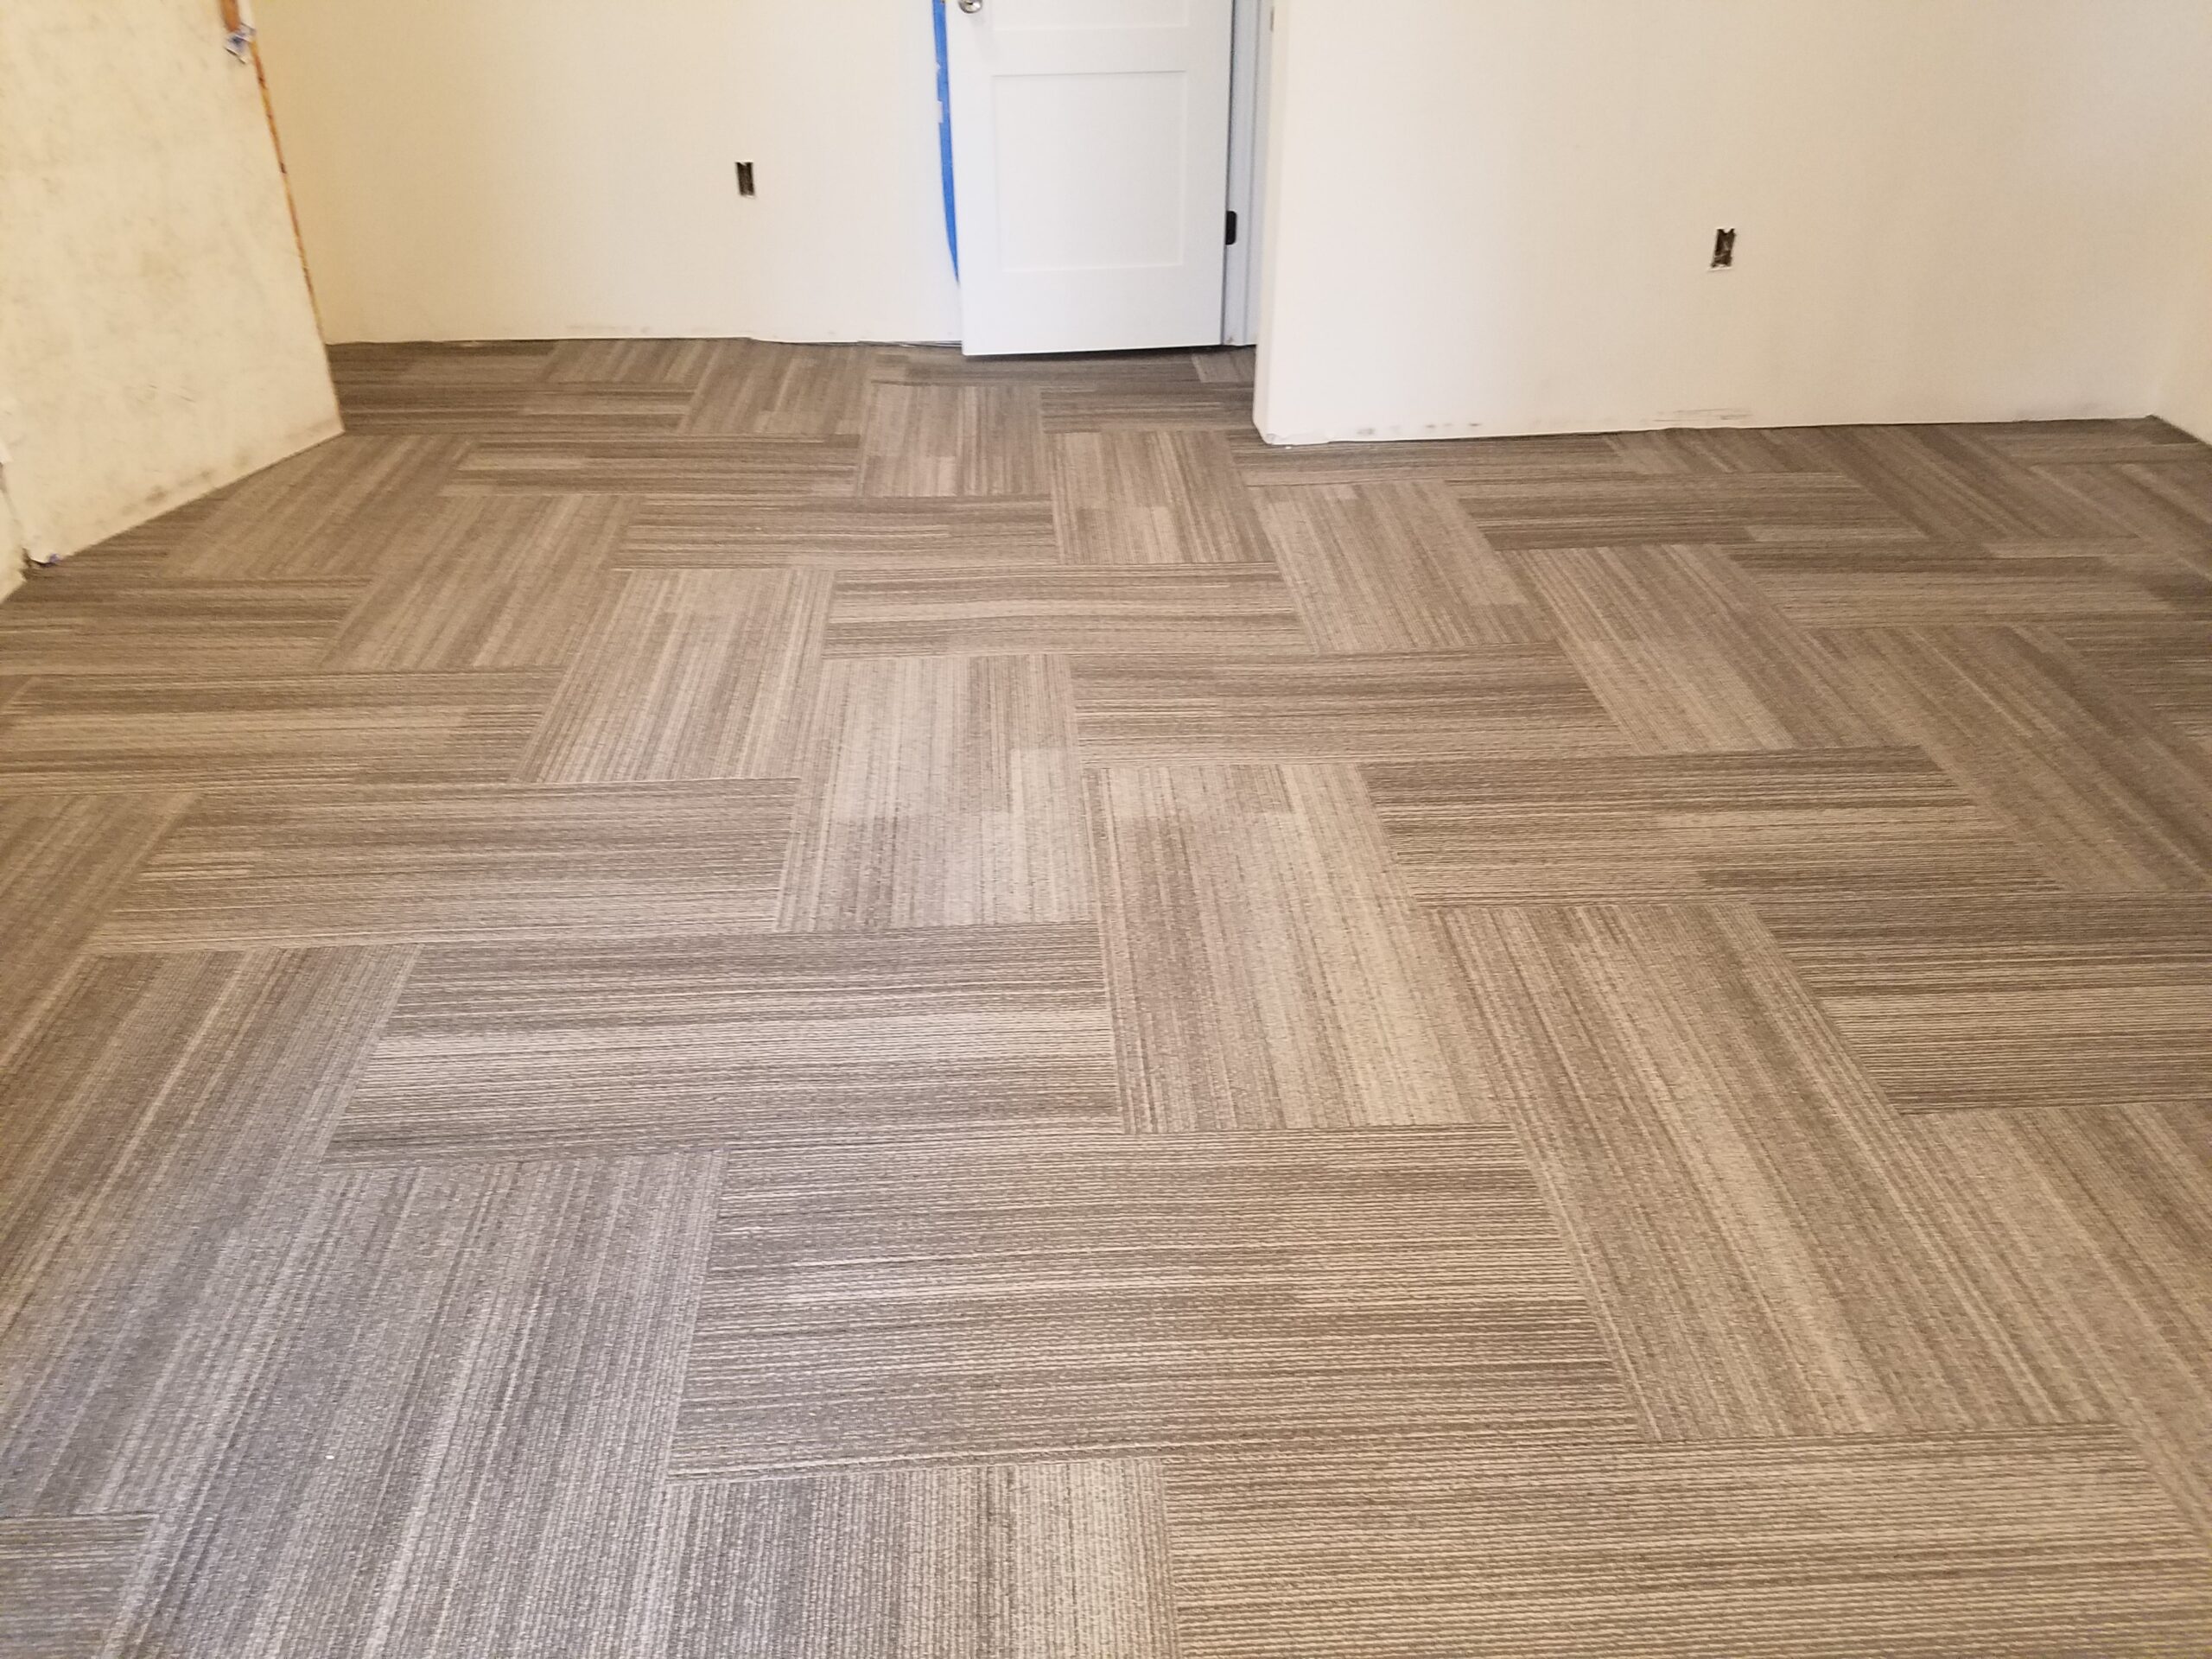 connecticut carpet installation tile (18)